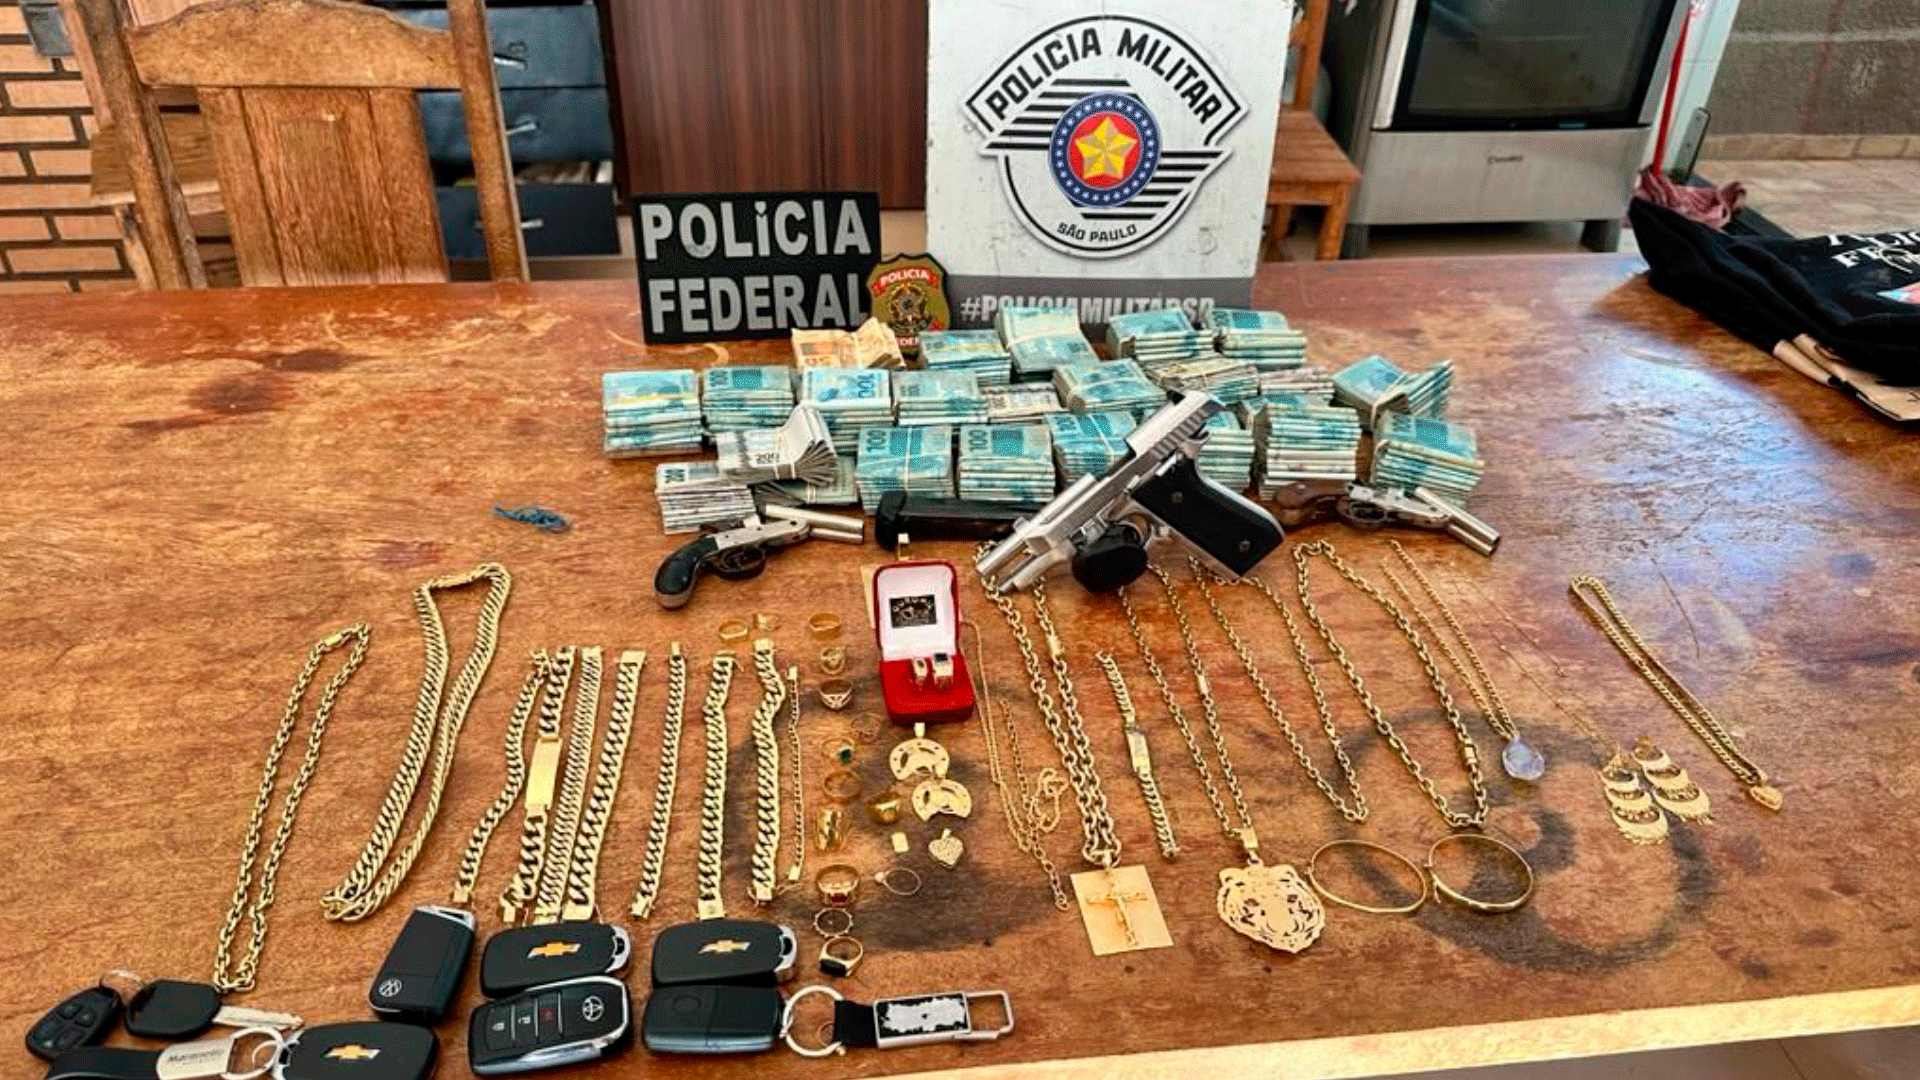 Polícia Federal realiza operação contra o tráfico de drogas e lavagem de dinheiro em SP, MG e SC